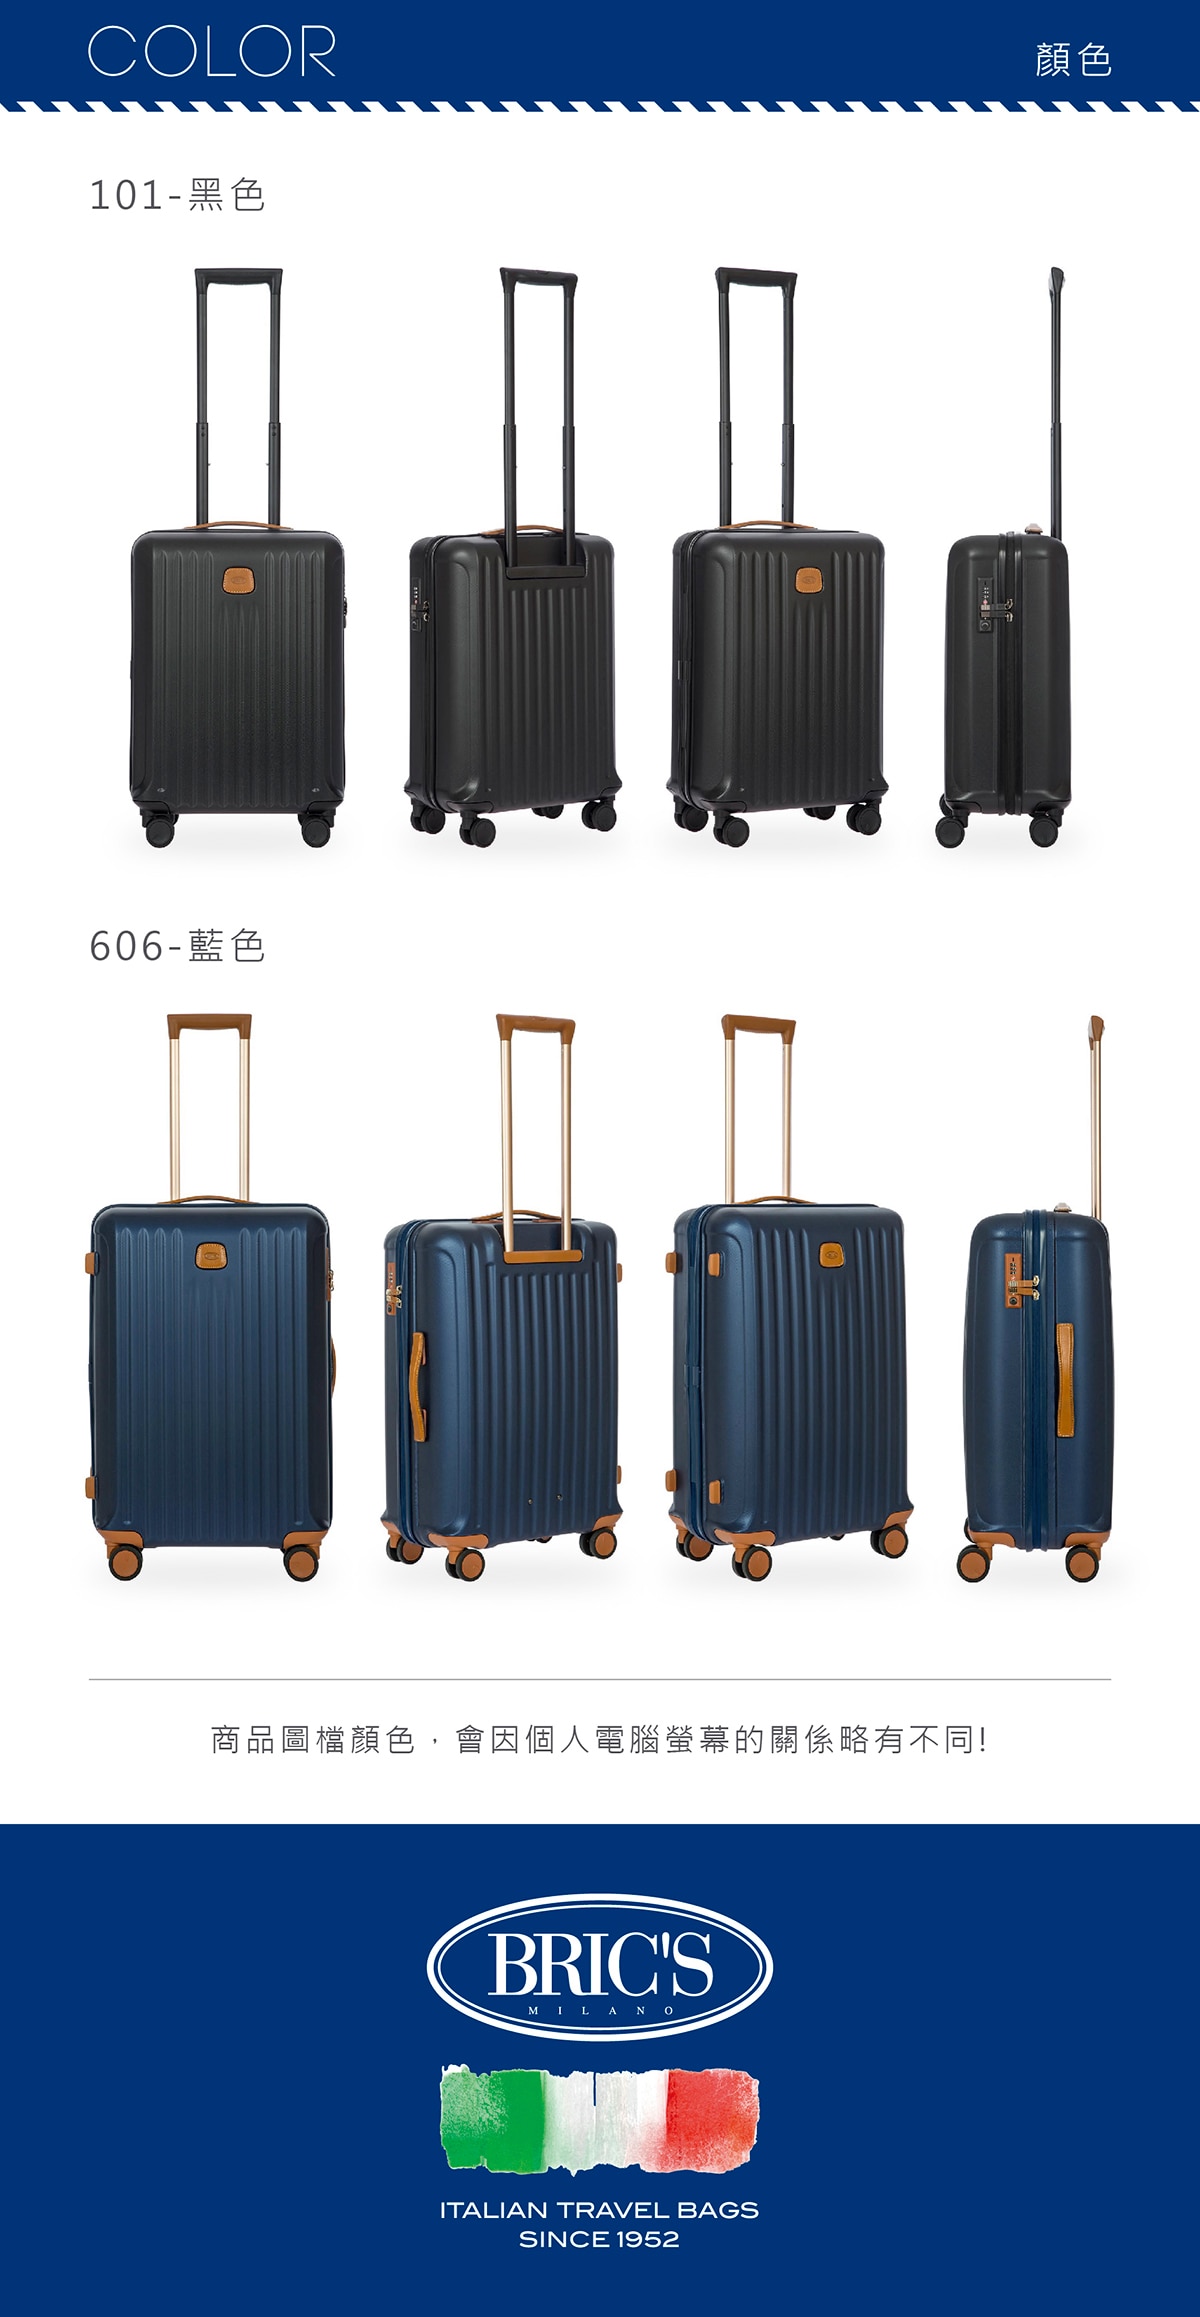 BRIC'S 27吋深藍色行李箱,高品質PC材質,CAPRI系列產品,採用高品質PC塑料,防撞,耐衝擊,行李箱堅固耐用品質有保障.